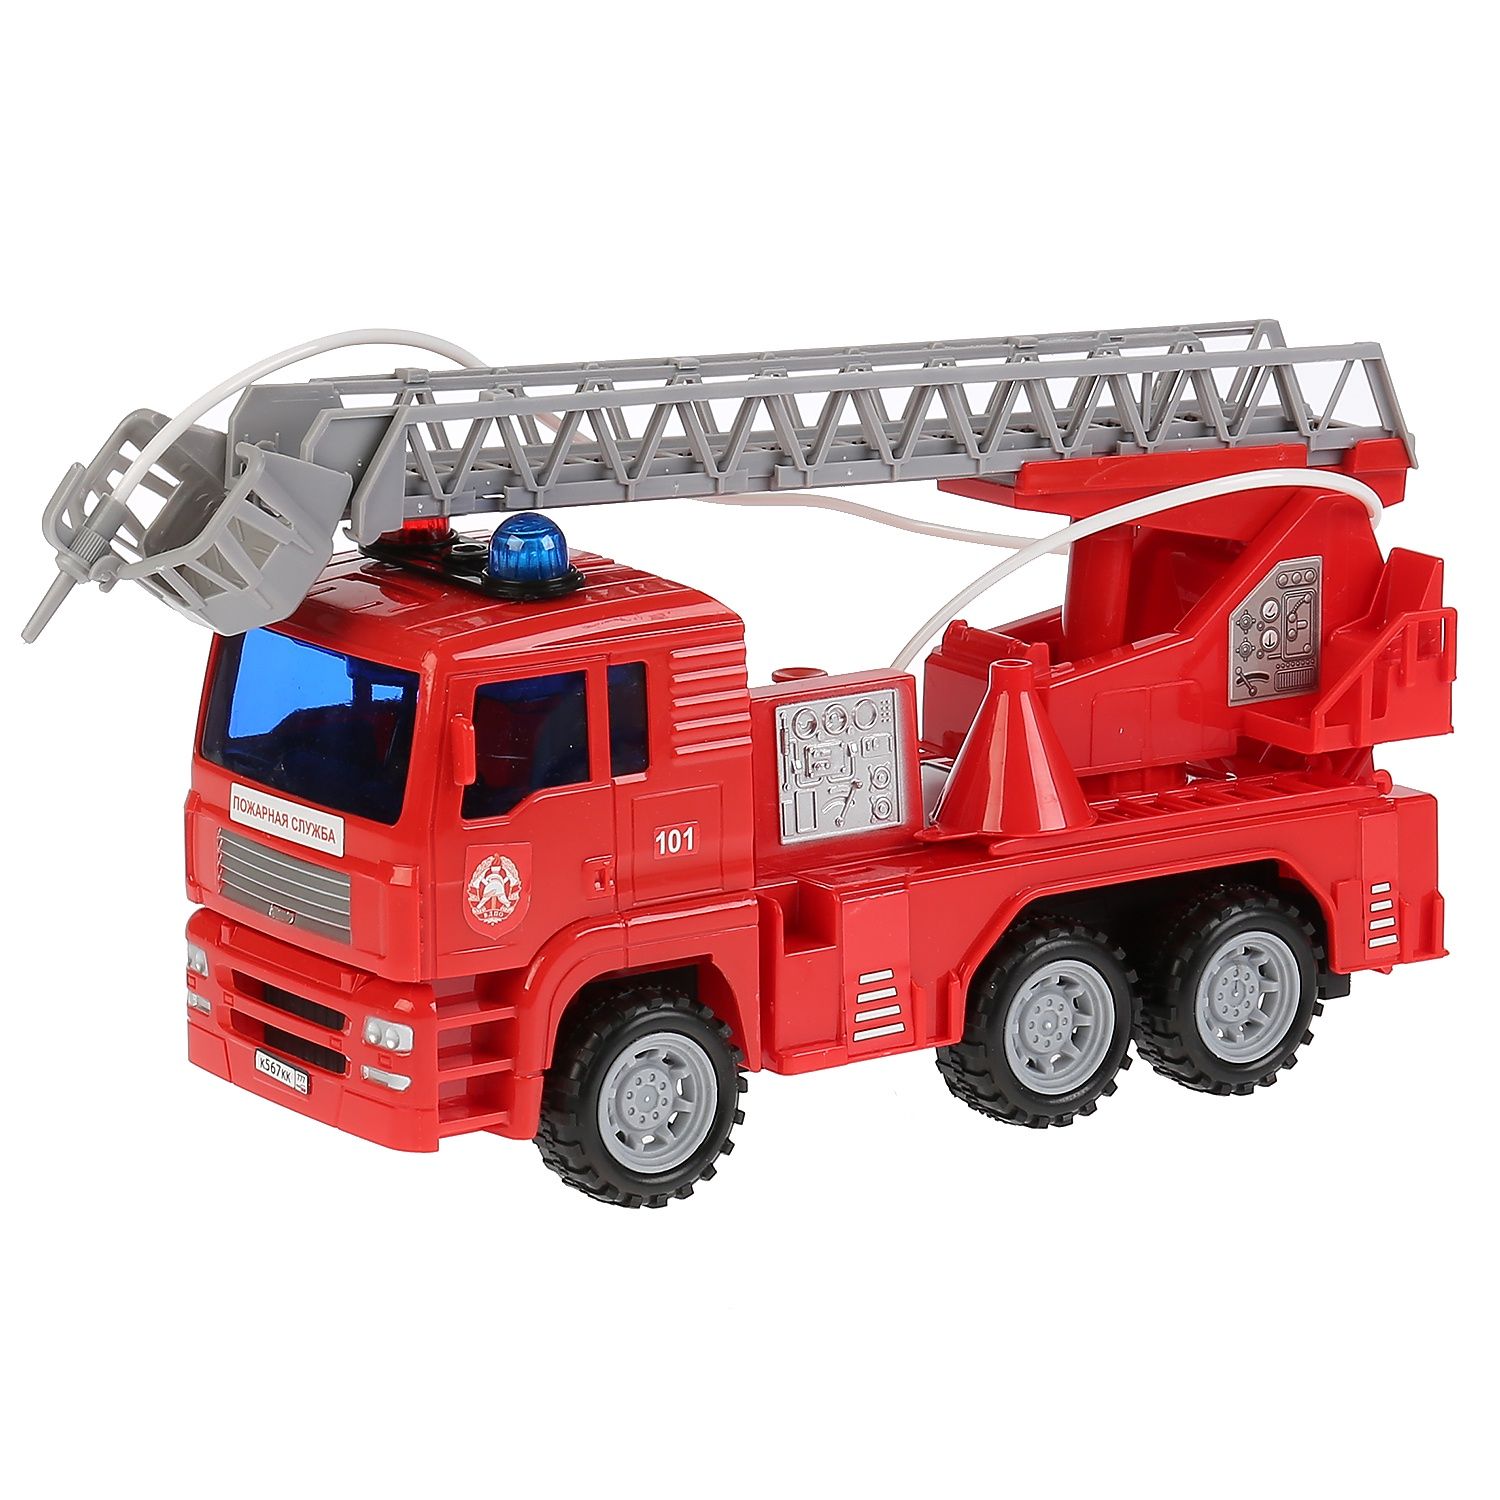 Купить игрушки технопарк. Пожарный автомобиль Технопарк 1335822-r 24 см. Пожарные игрушки Технопарк. Игрушечный пожарный КАМАЗ Технопарк. Машина Технопарк пожарная u1401e-2.